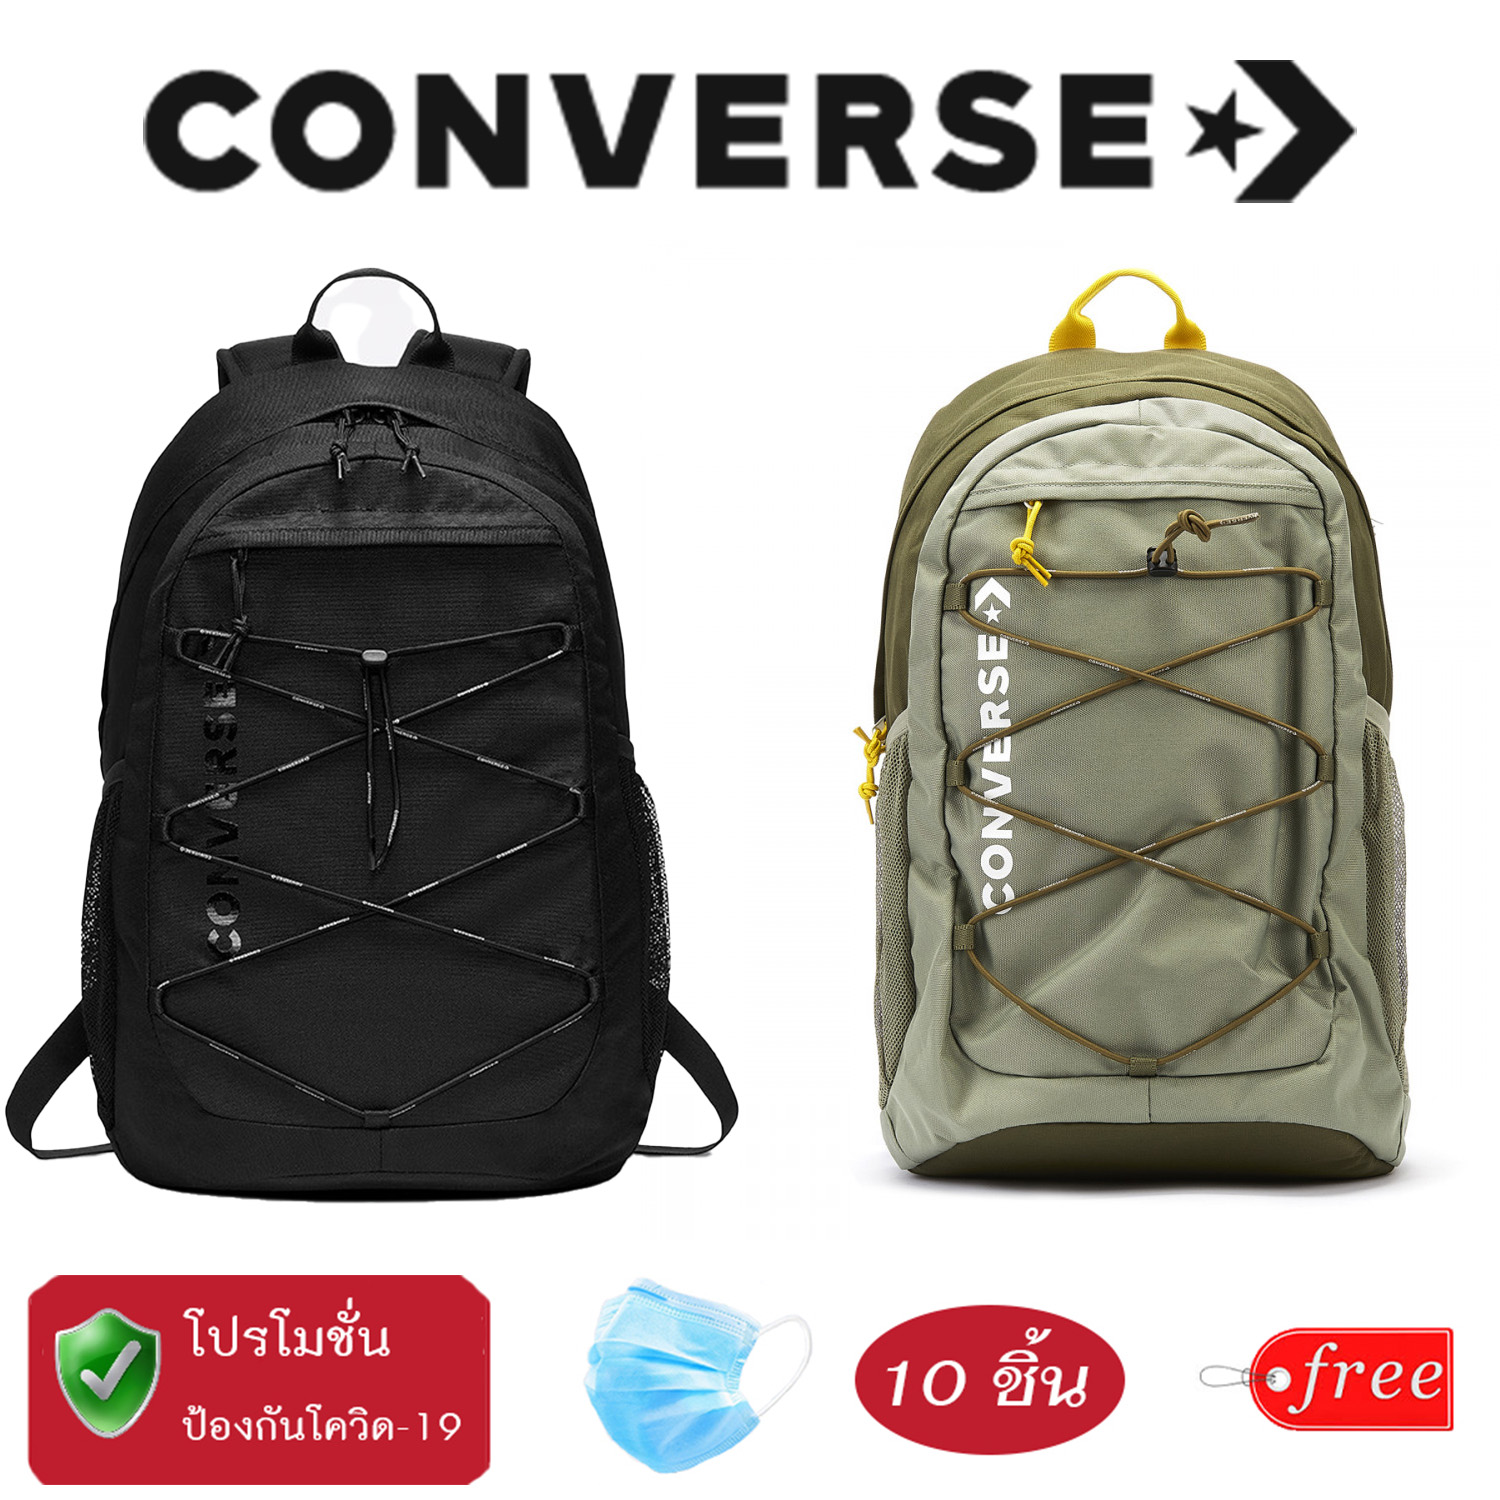 [ลิขสิทธิ์แท้] กระเป๋าเป้ สะพายหลัง คอนเวิร์ส (สีเขียว) Converse Swap Out Backpack แถมฟรี M A S K 10ชิ้น